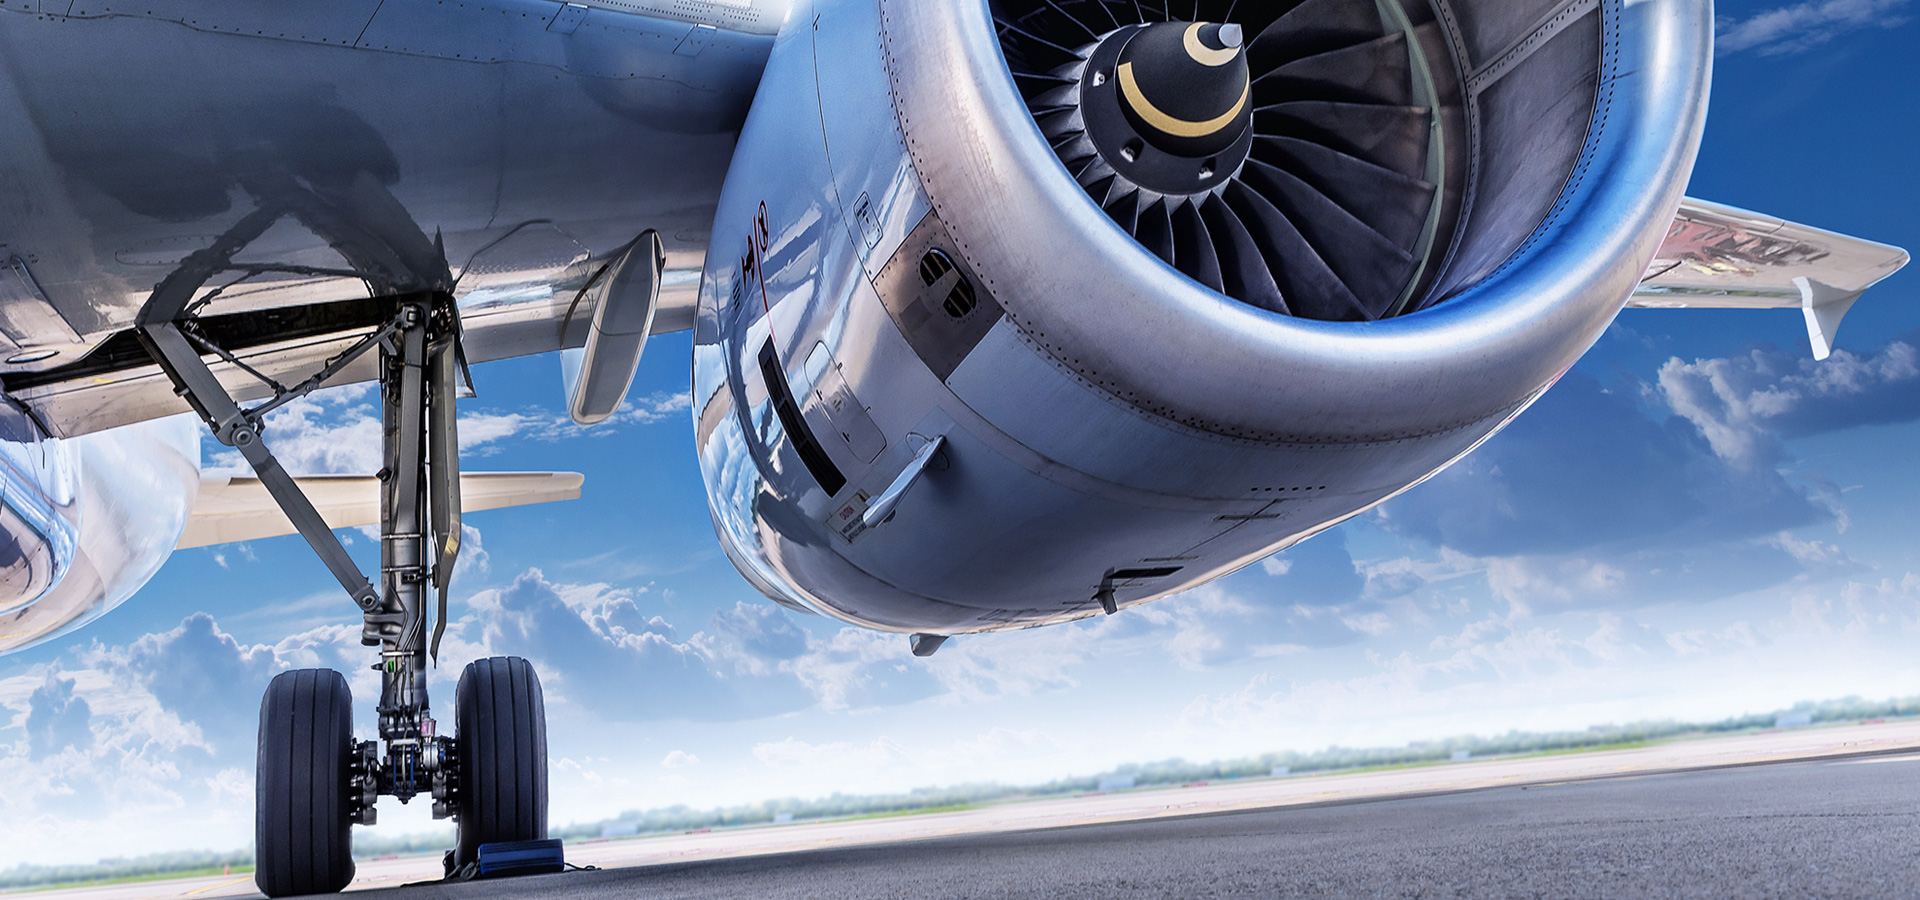 Dowiedz się, w jaki sposób gazy mogą przyczynić się do poprawy jakości i obniżenia kosztów w przemyśle lotniczym